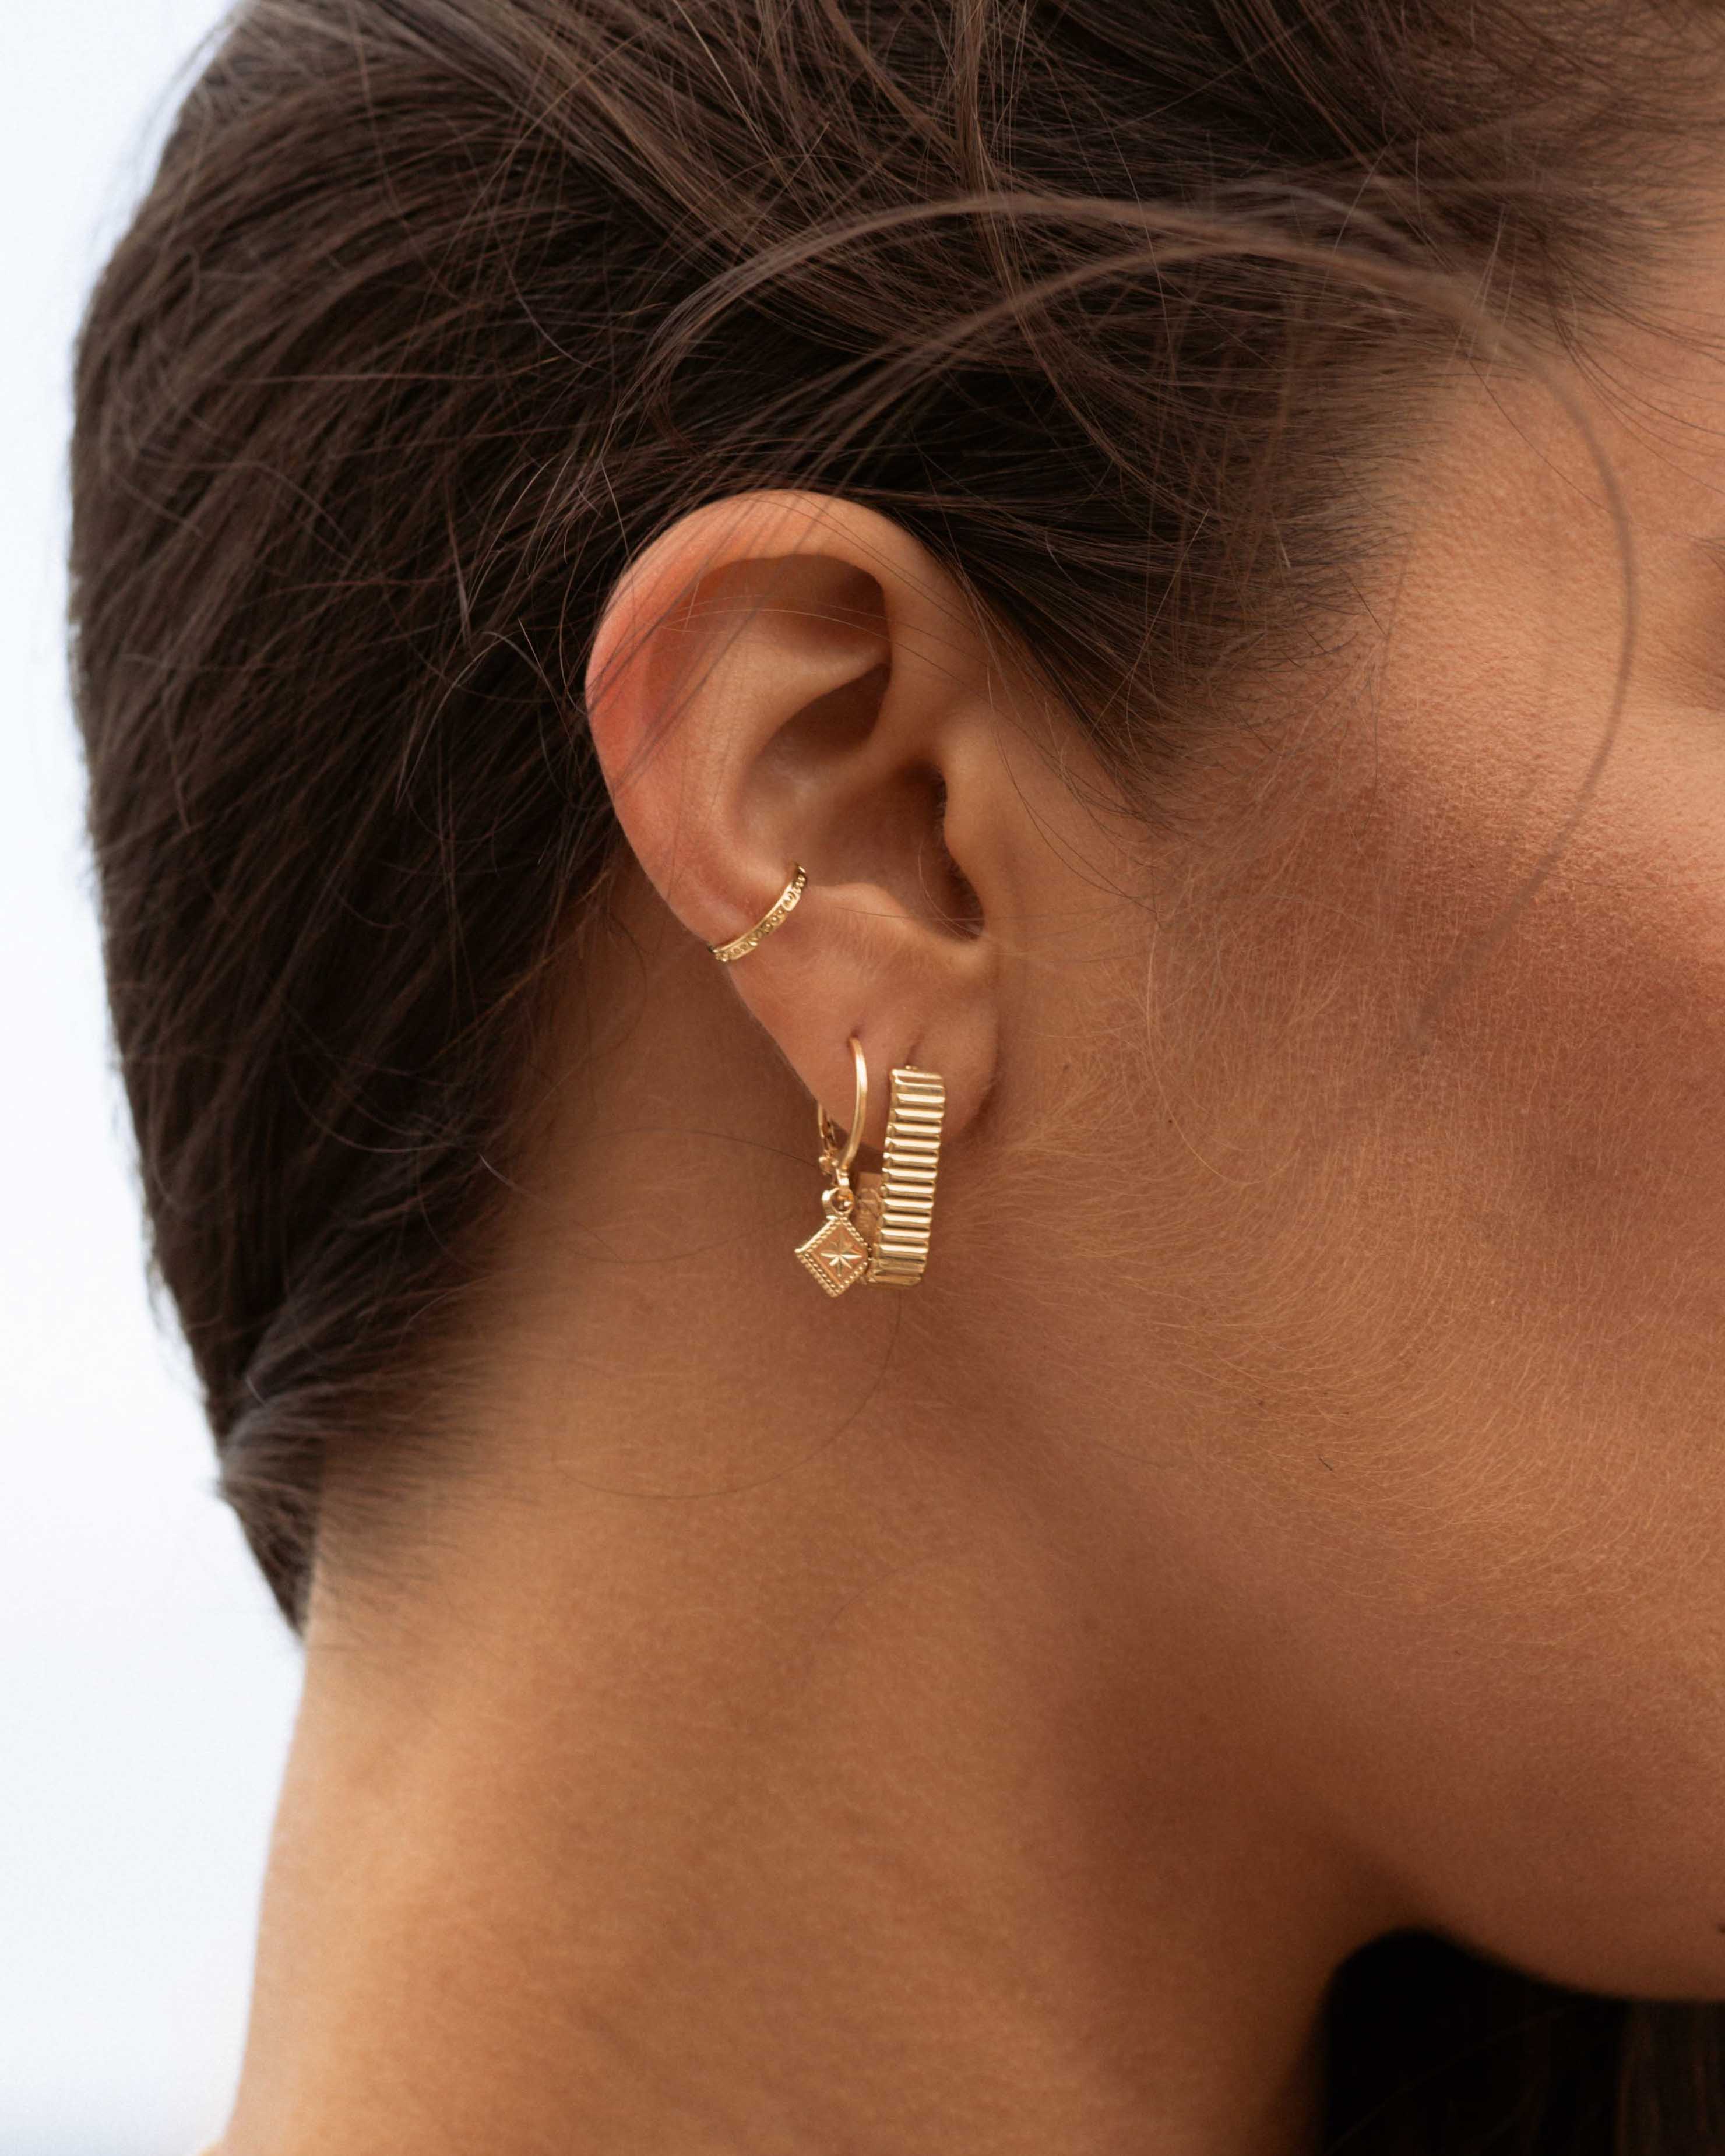 Association de boucles d'oreilles en plaqué or 3 microns composées d'un anneau d'oreille fin, d'une boucle pendante avec un anneau et un losange, et d'une boucle rectangle avec des motifs en ligne made in France.